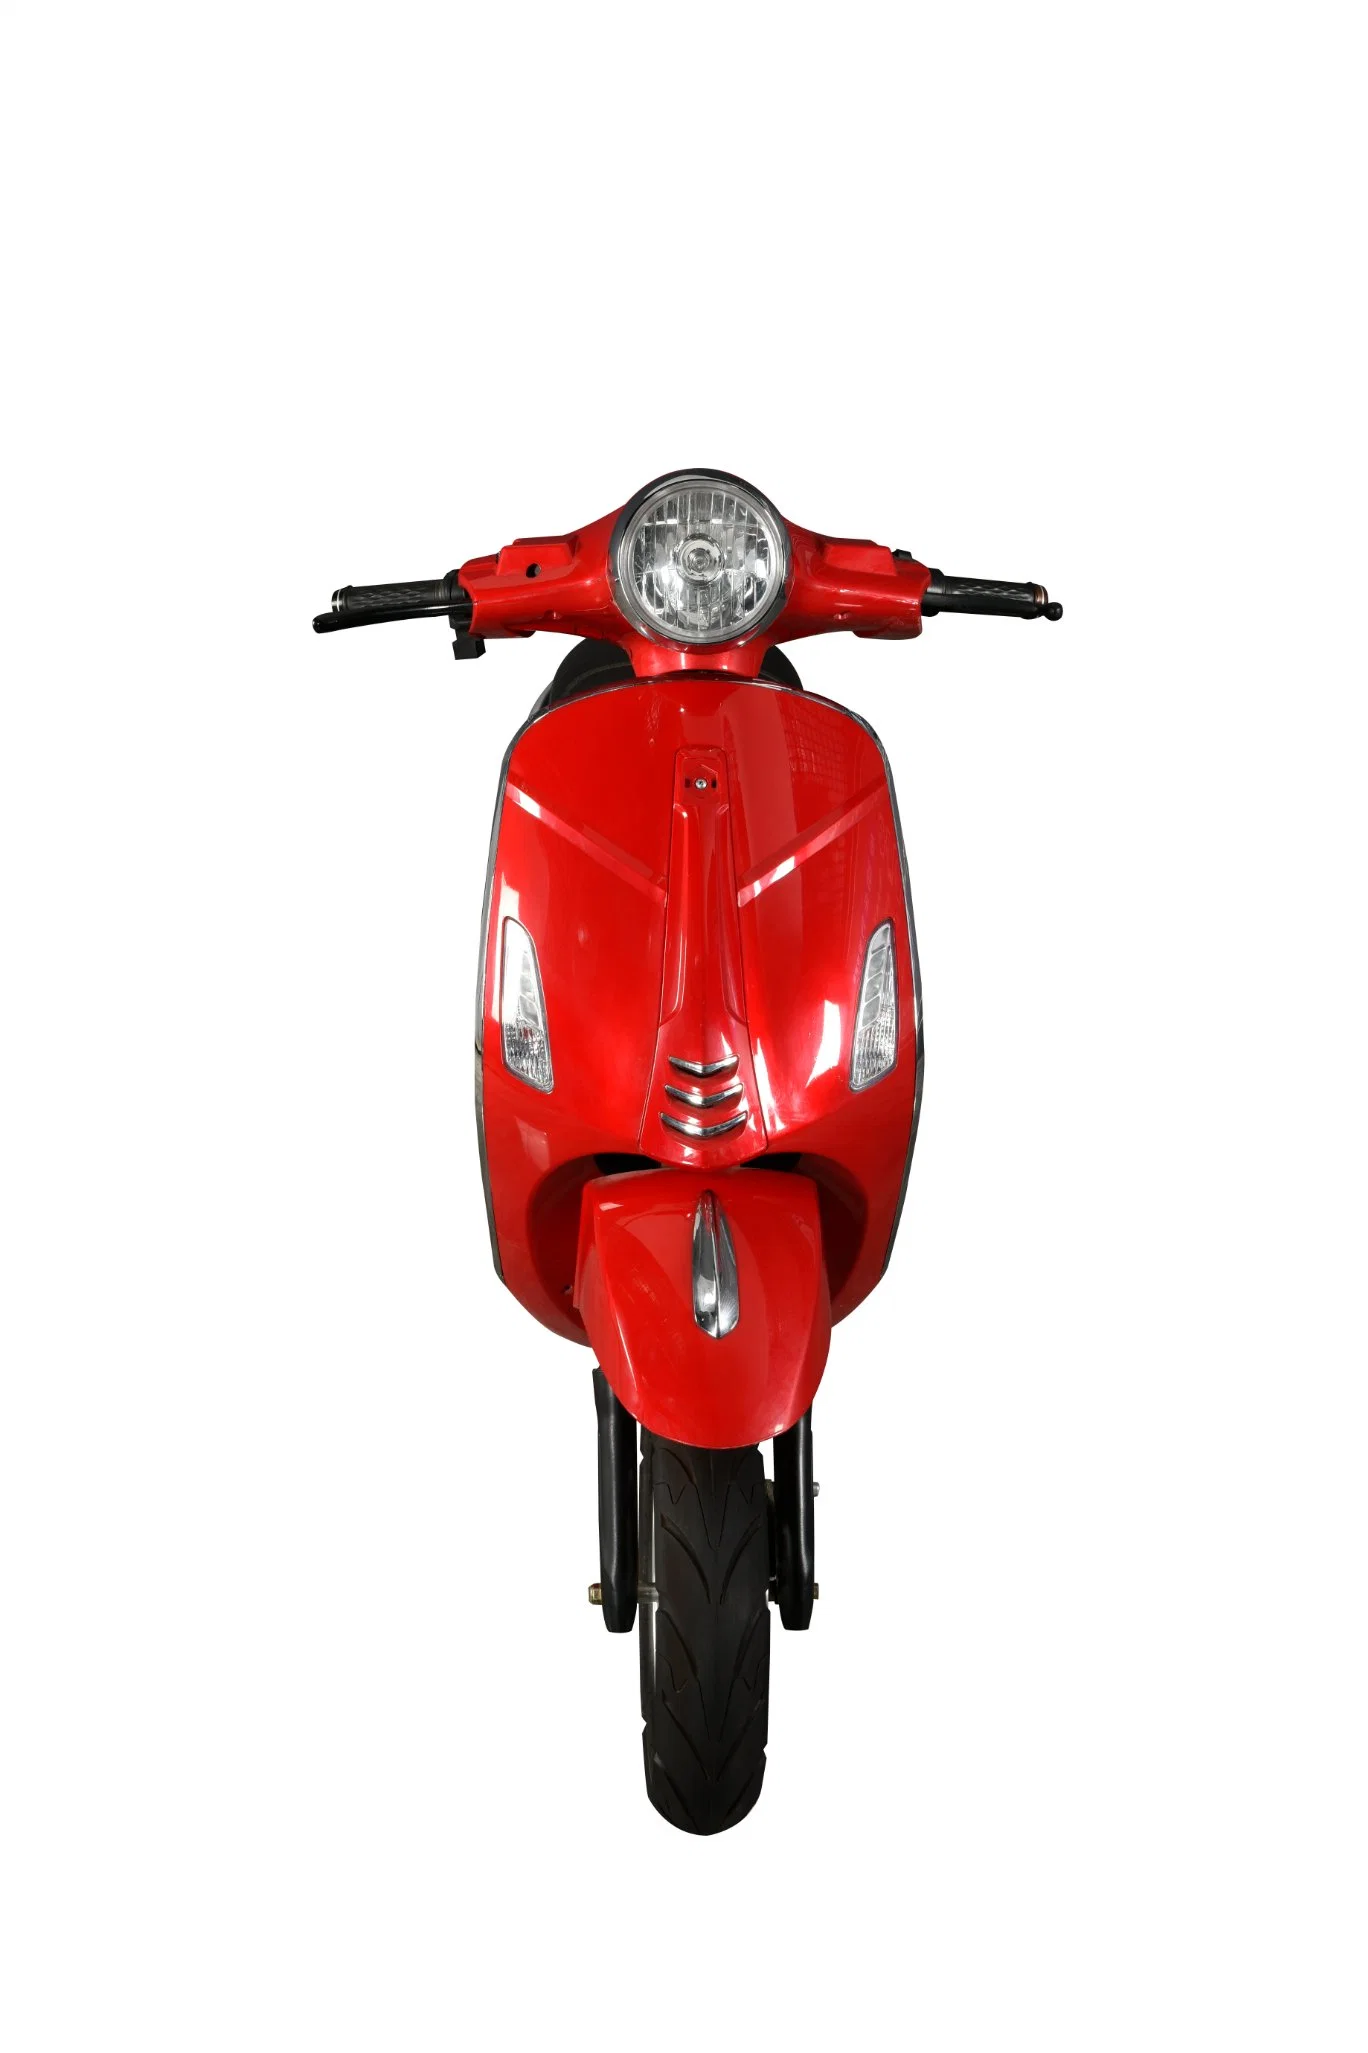 2022 Nuevo estilo adulto 2 ruedas moto Scooter eléctrico de batería eléctrica bicicleta Moto